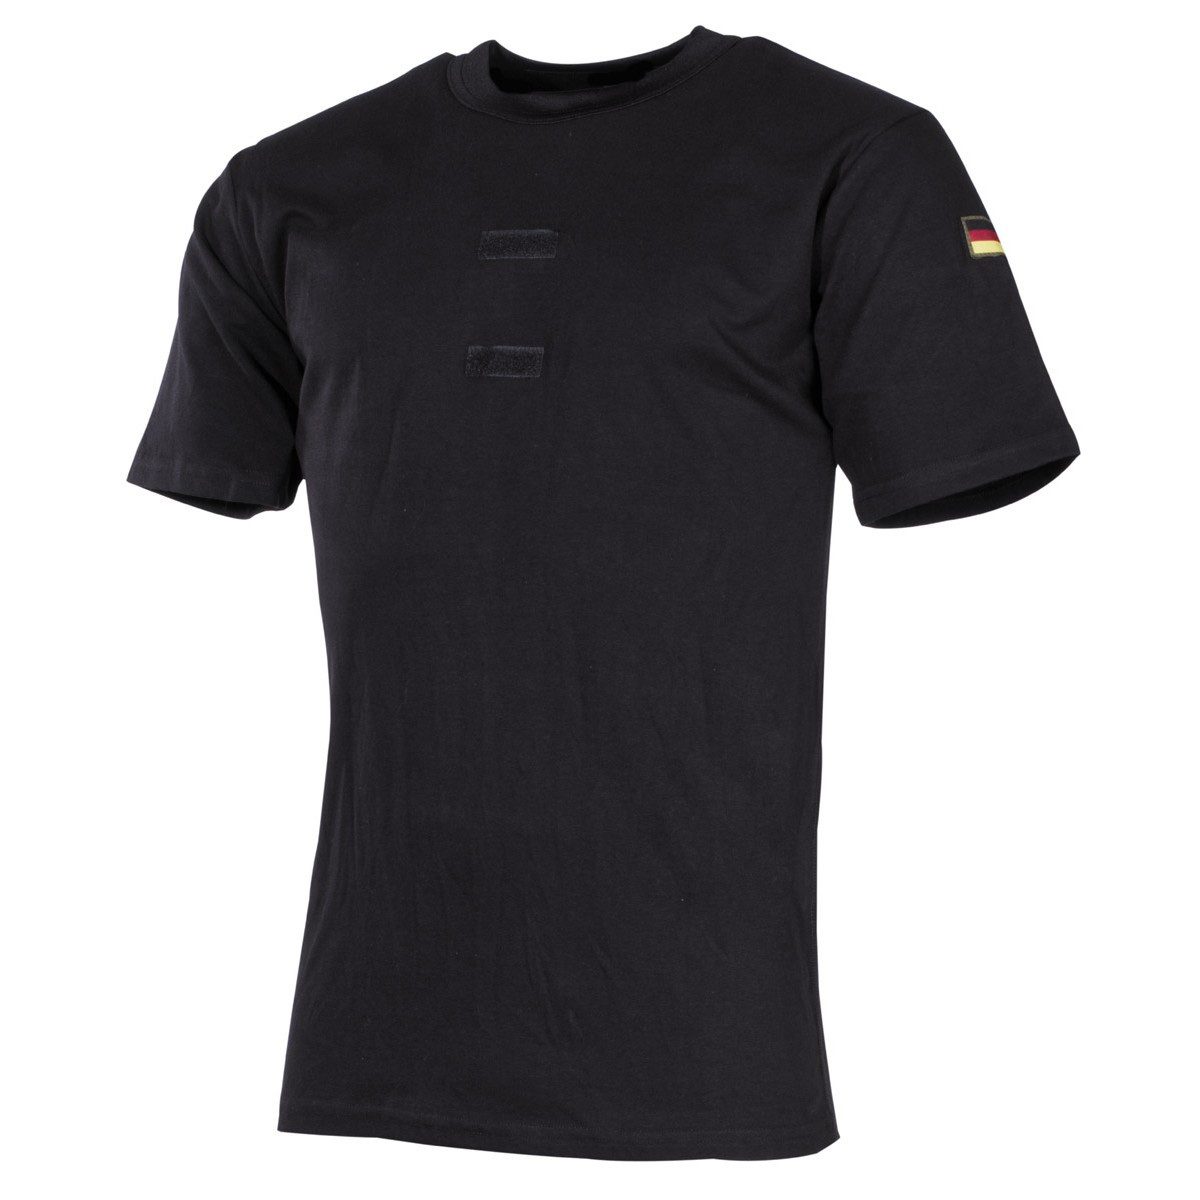 MFH Funktionsunterhemd Bundeswehr Tropenunterhemd, schwarz, Klett, Nationalitätsabzeichen 8